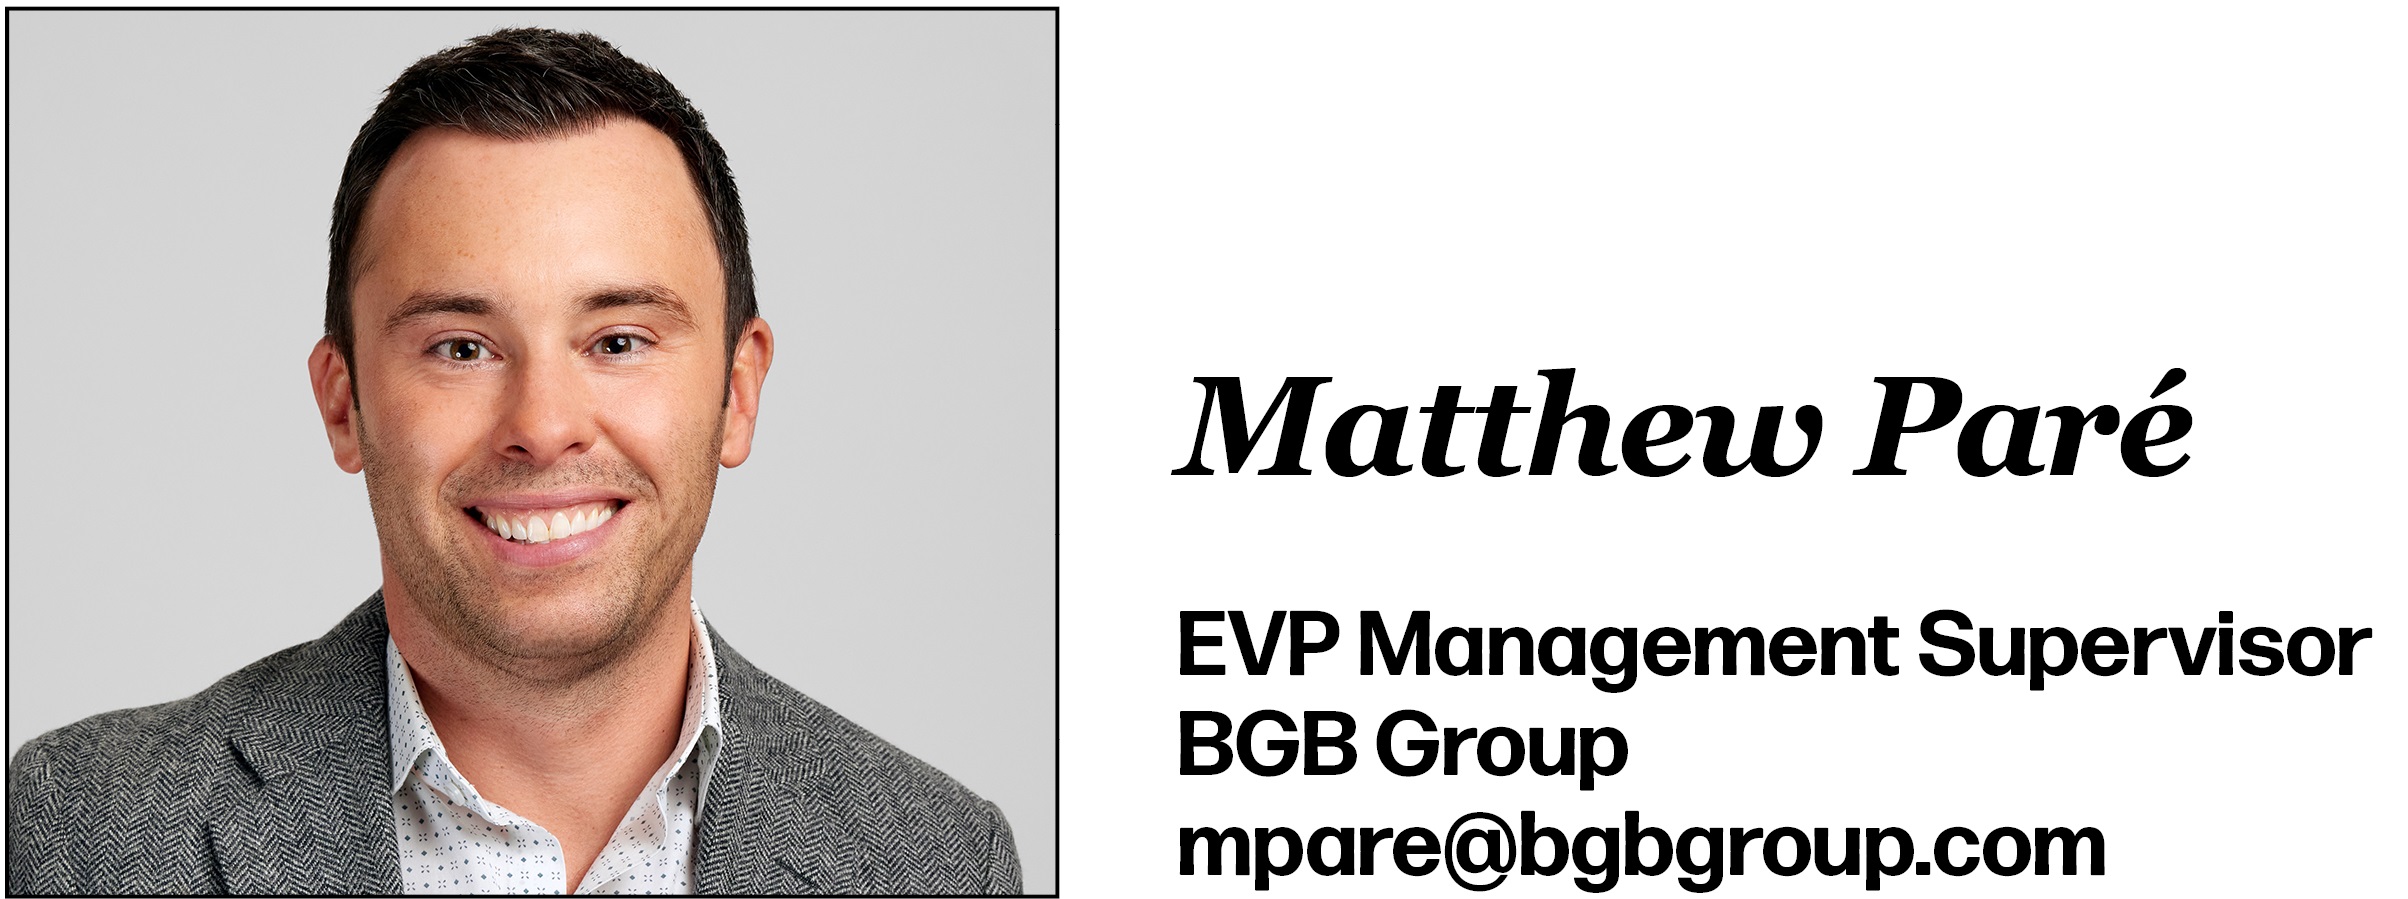 Matthew Paré EVP Management Supervisor BGB Group mpare@bgbgroup.com